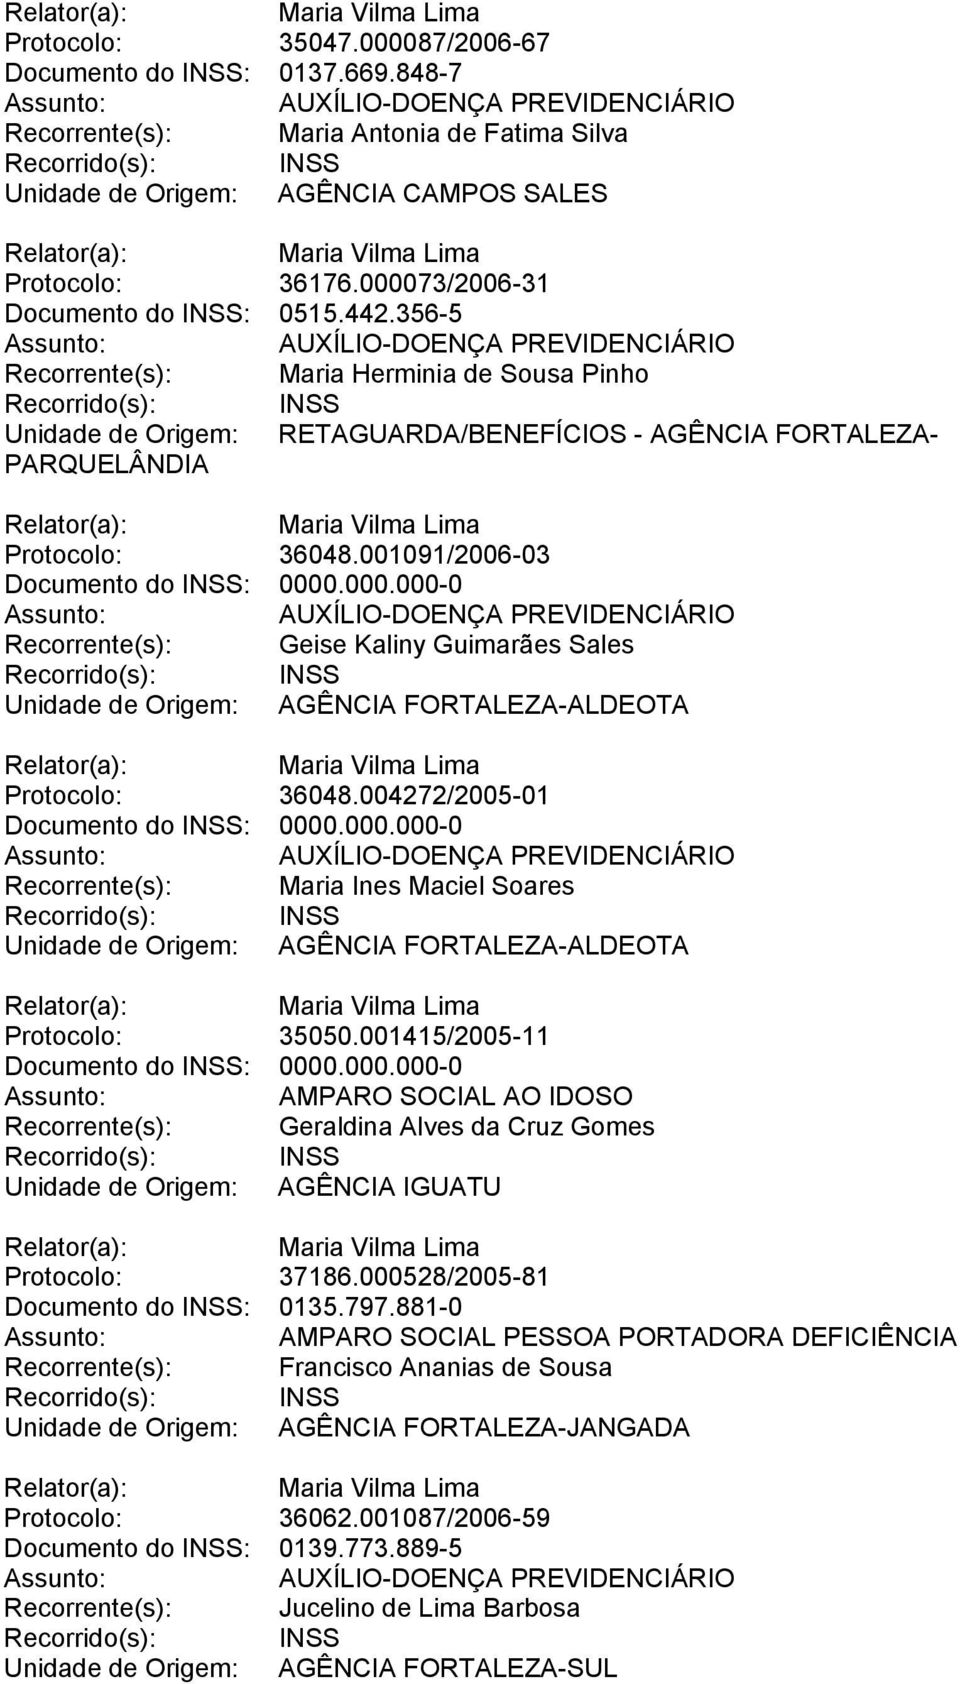 001091/2006-03 Recorrente(s): Geise Kaliny Guimarães Sales Unidade de Origem: AGÊNCIA FORTALEZA-ALDEOTA Protocolo: 36048.